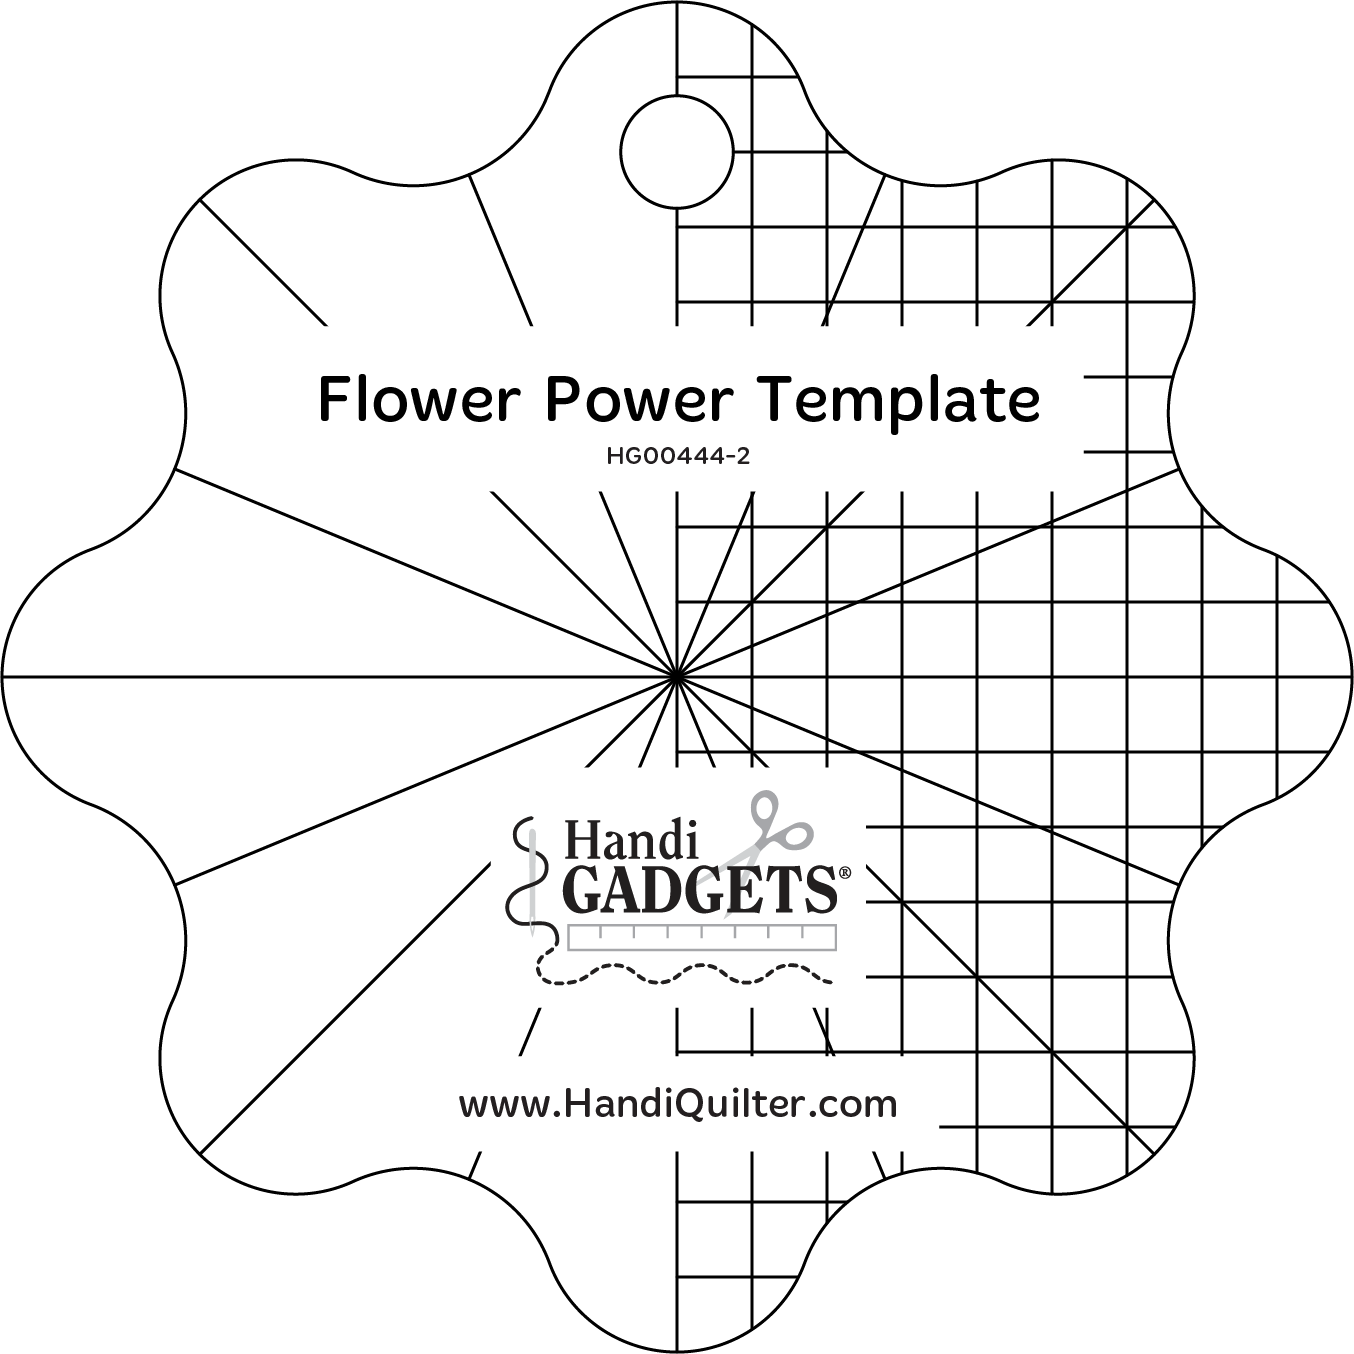 Flower Power Template